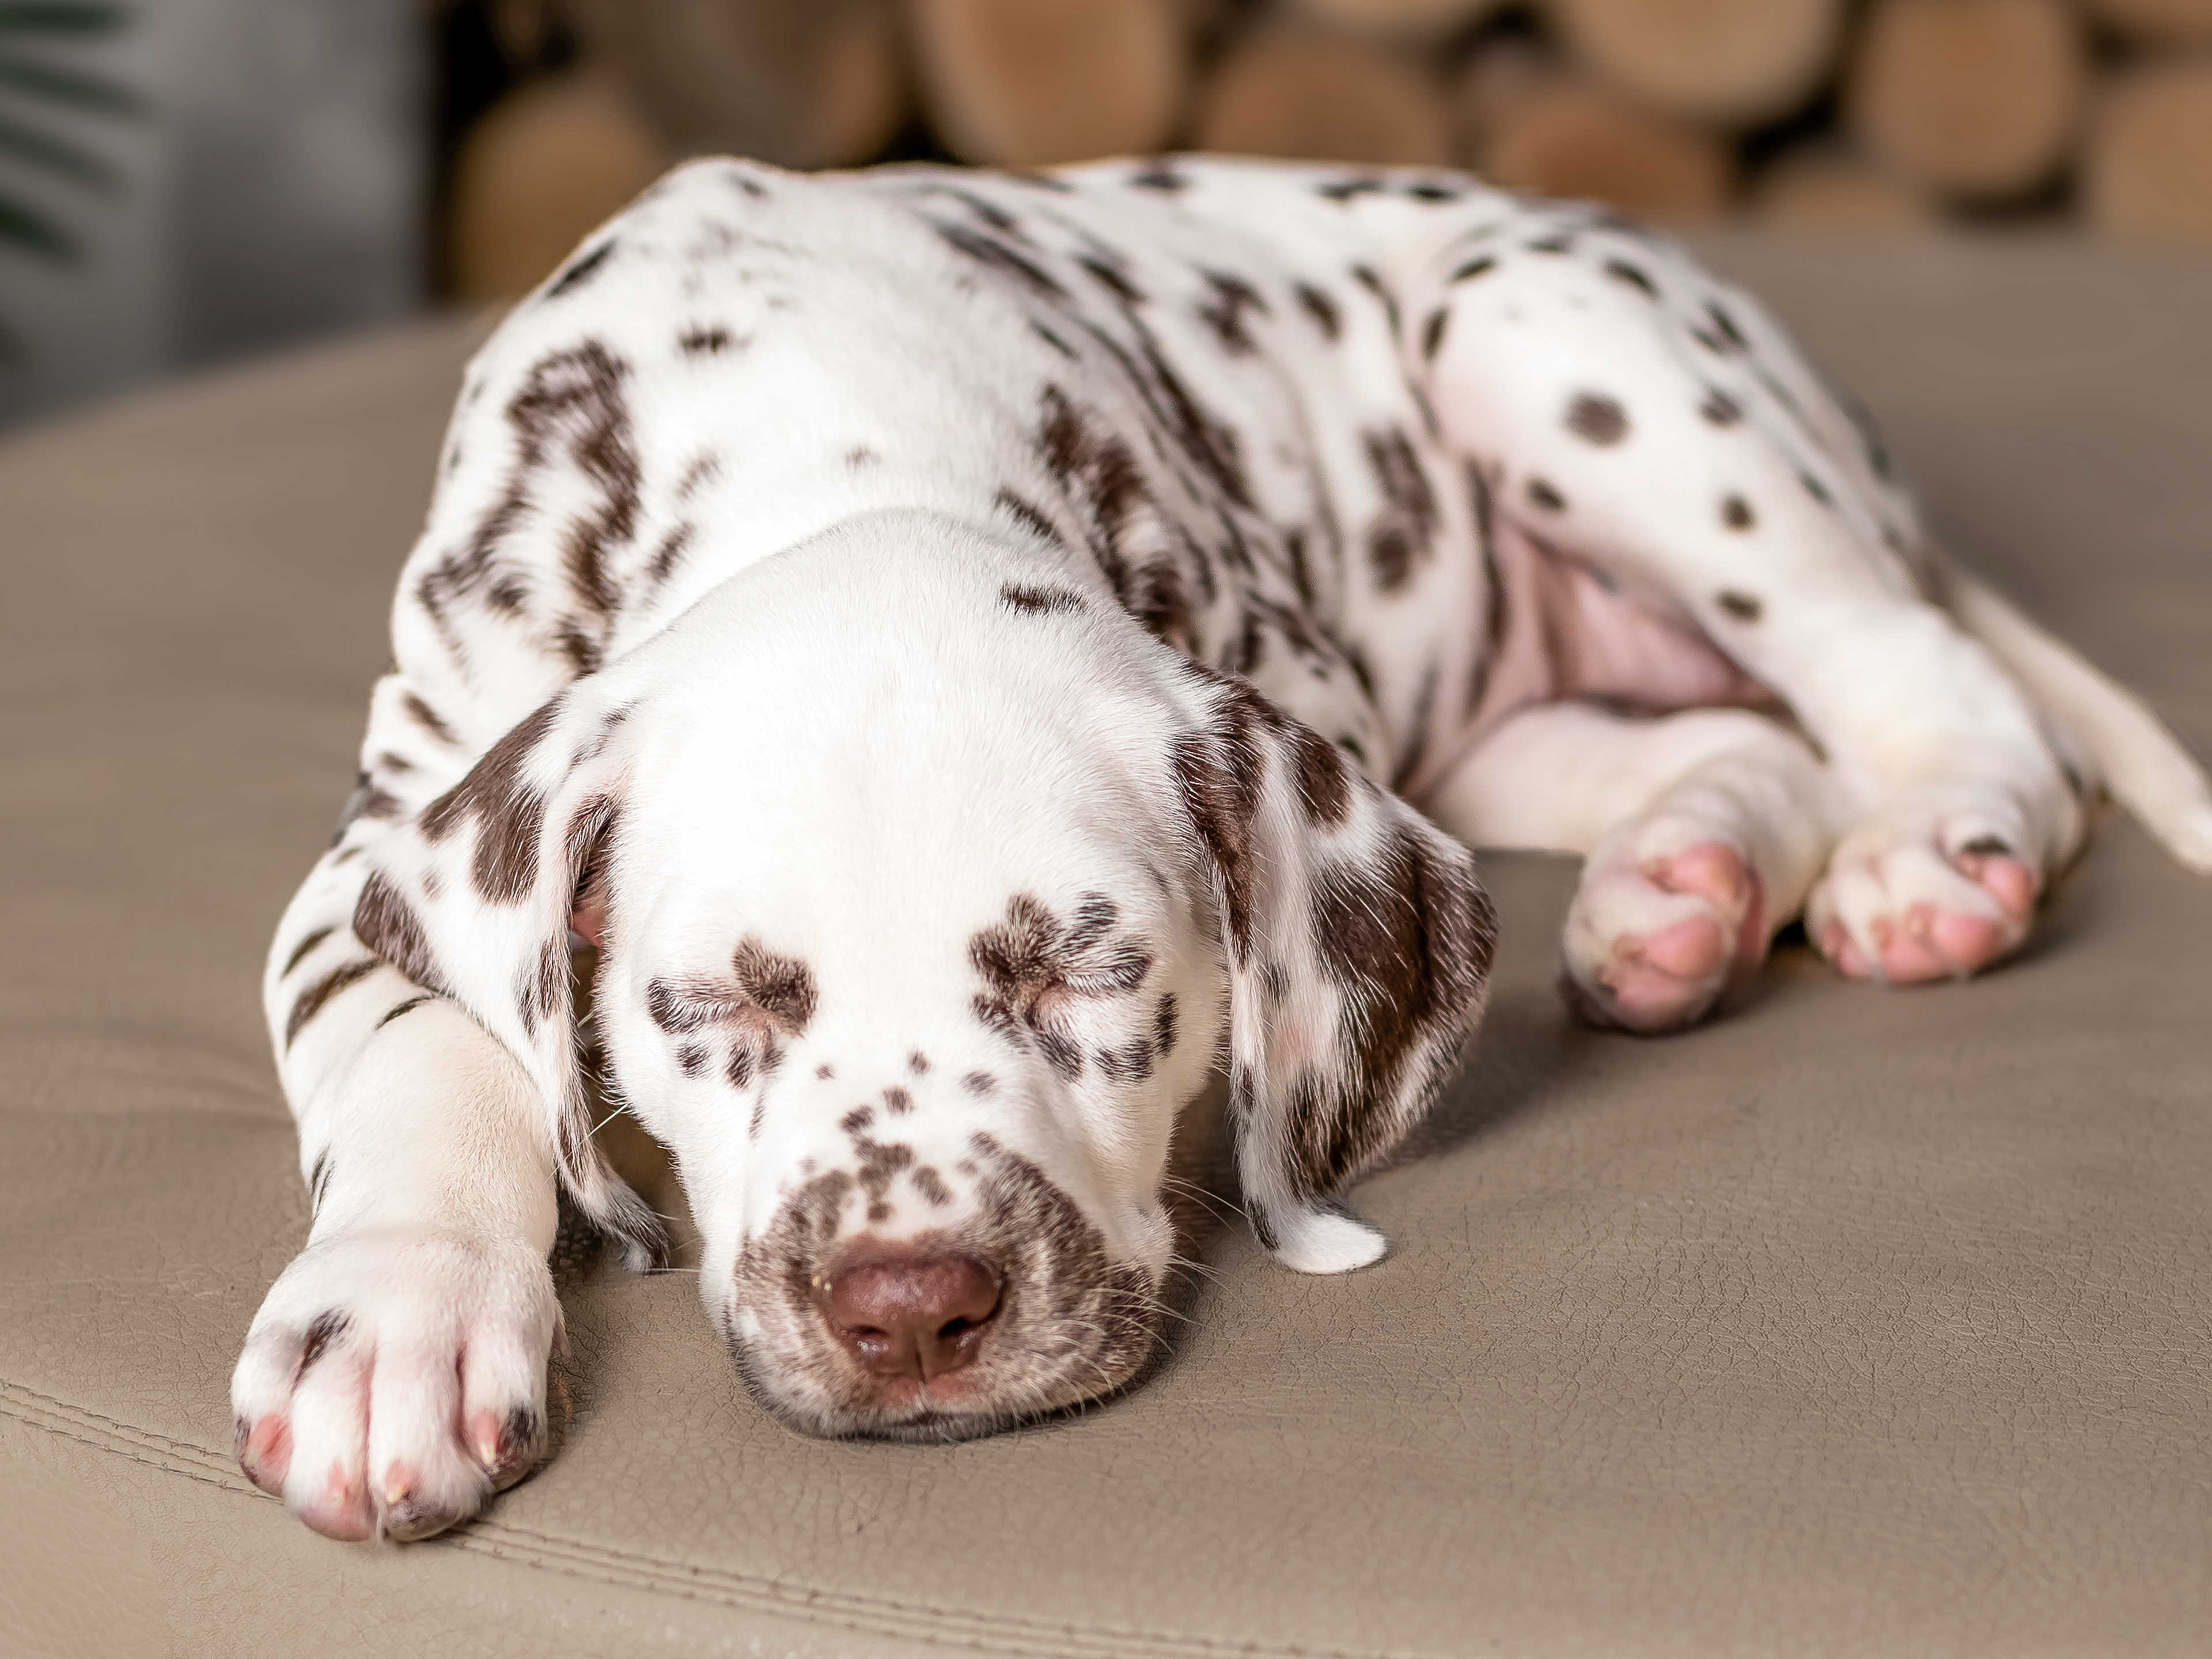 Dalmatian puppy sleeping indoors